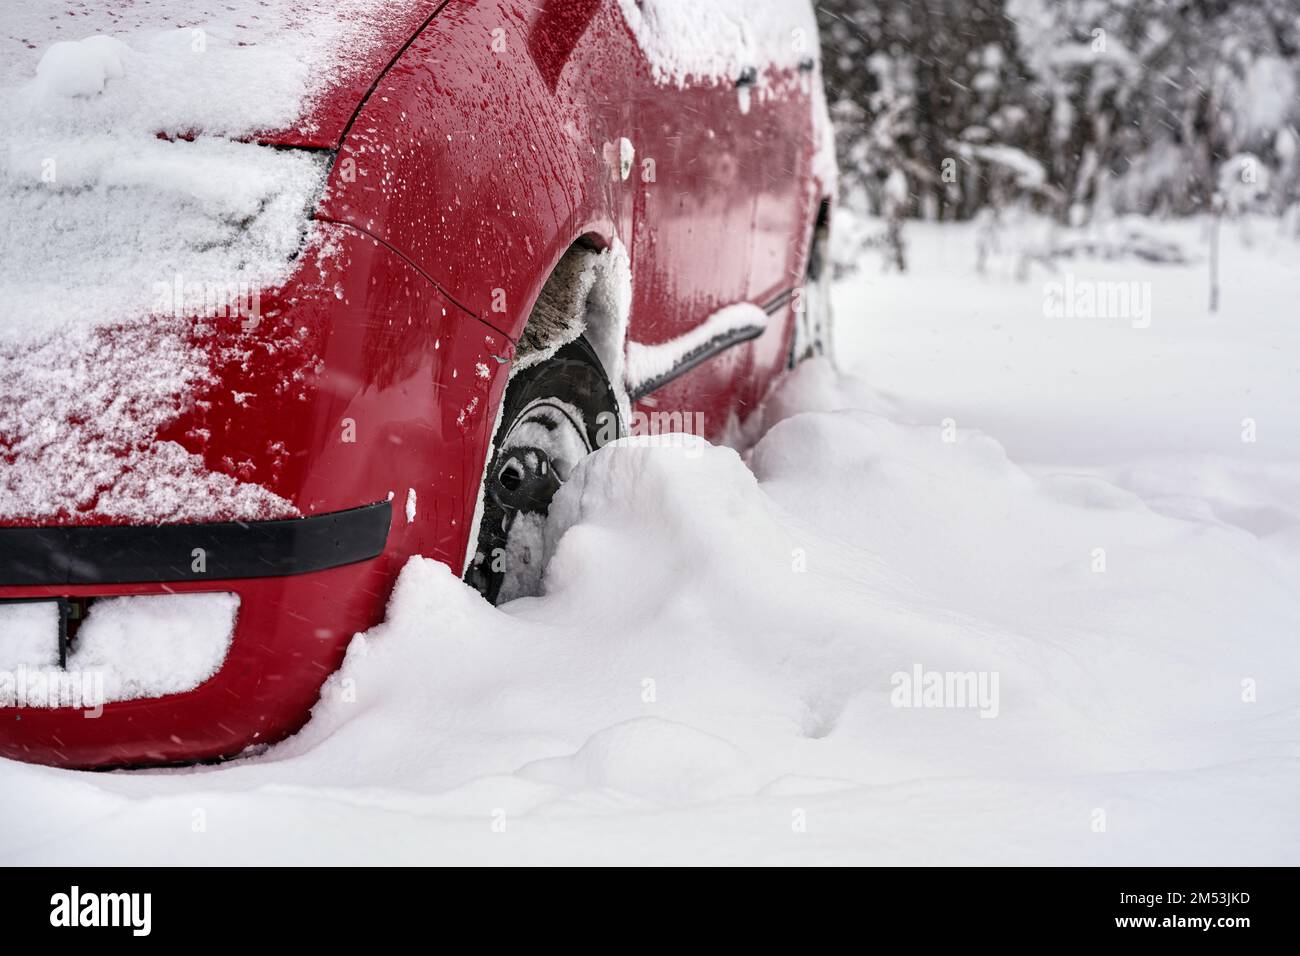 Voiture rouge garée dans une couche épaisse de neige après une tempête de neige intense, détail sur le pneu - seulement une demi-roue visible Banque D'Images